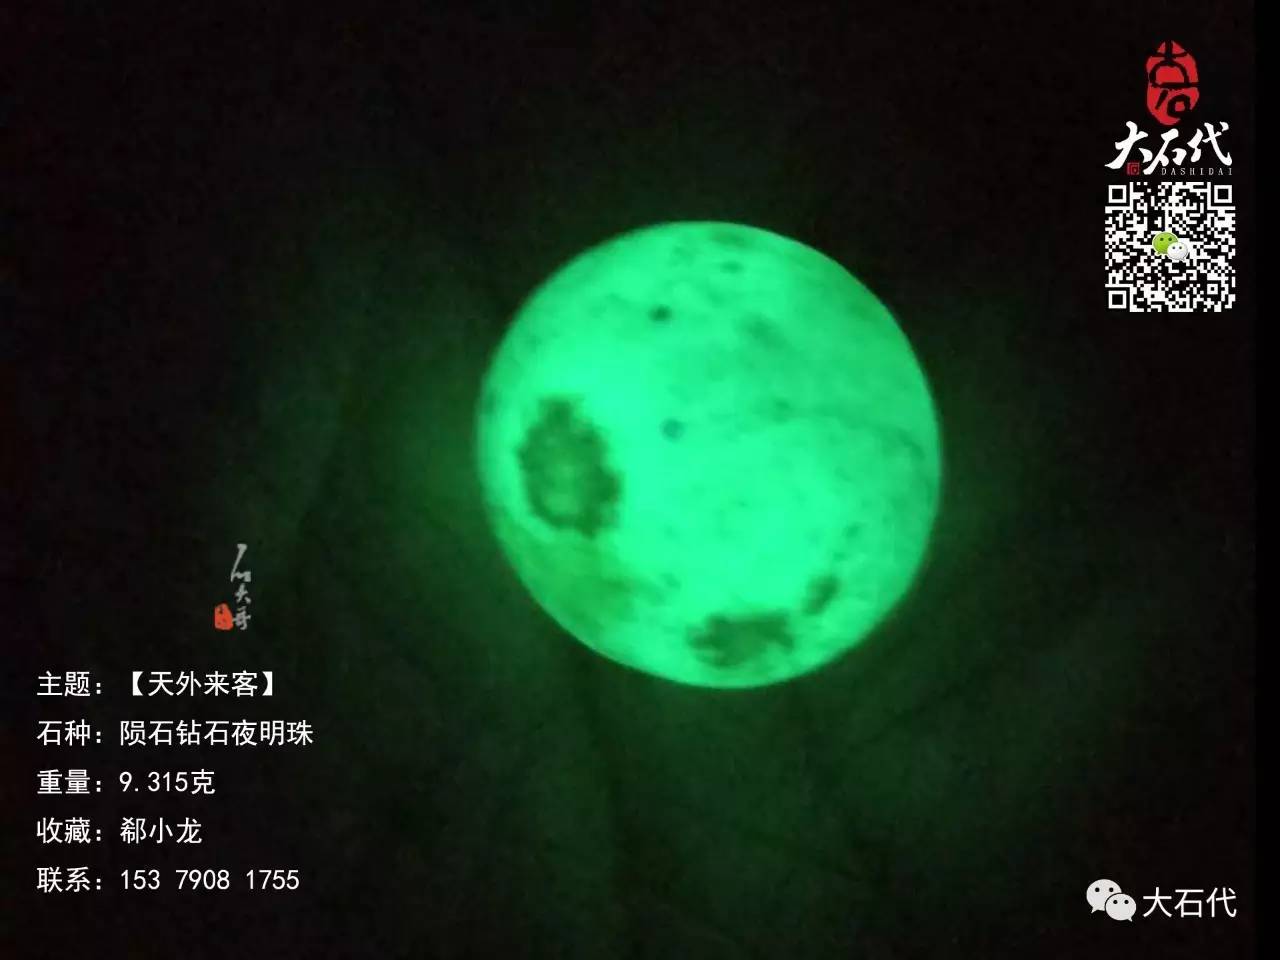 中国出现了第二颗陨石钻石夜明珠